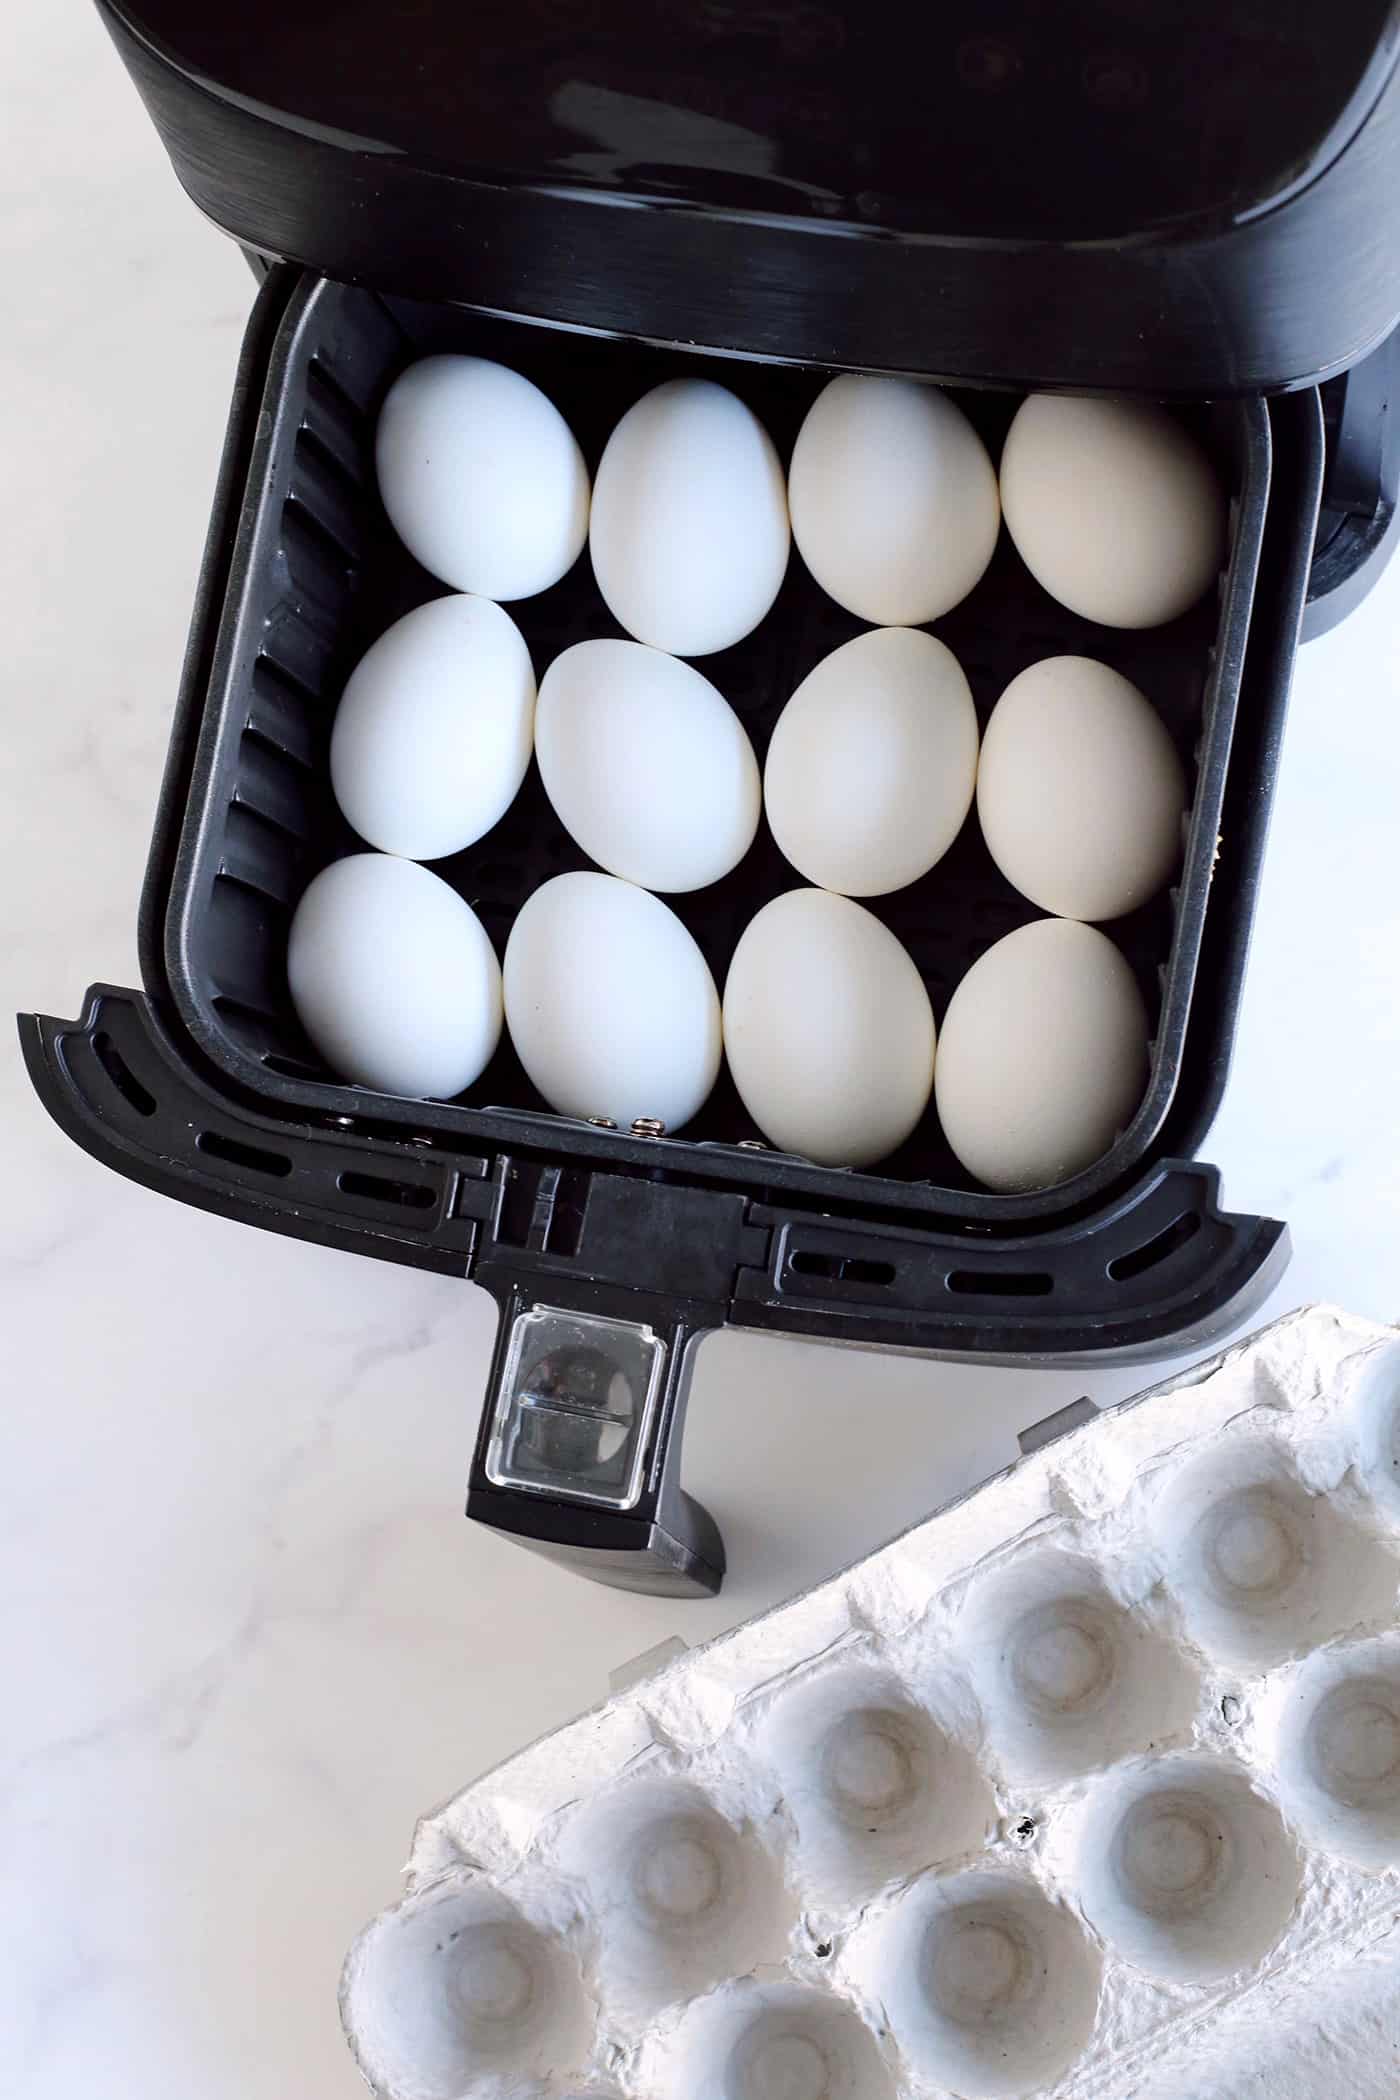 A dozen eggs in an air fryer basket